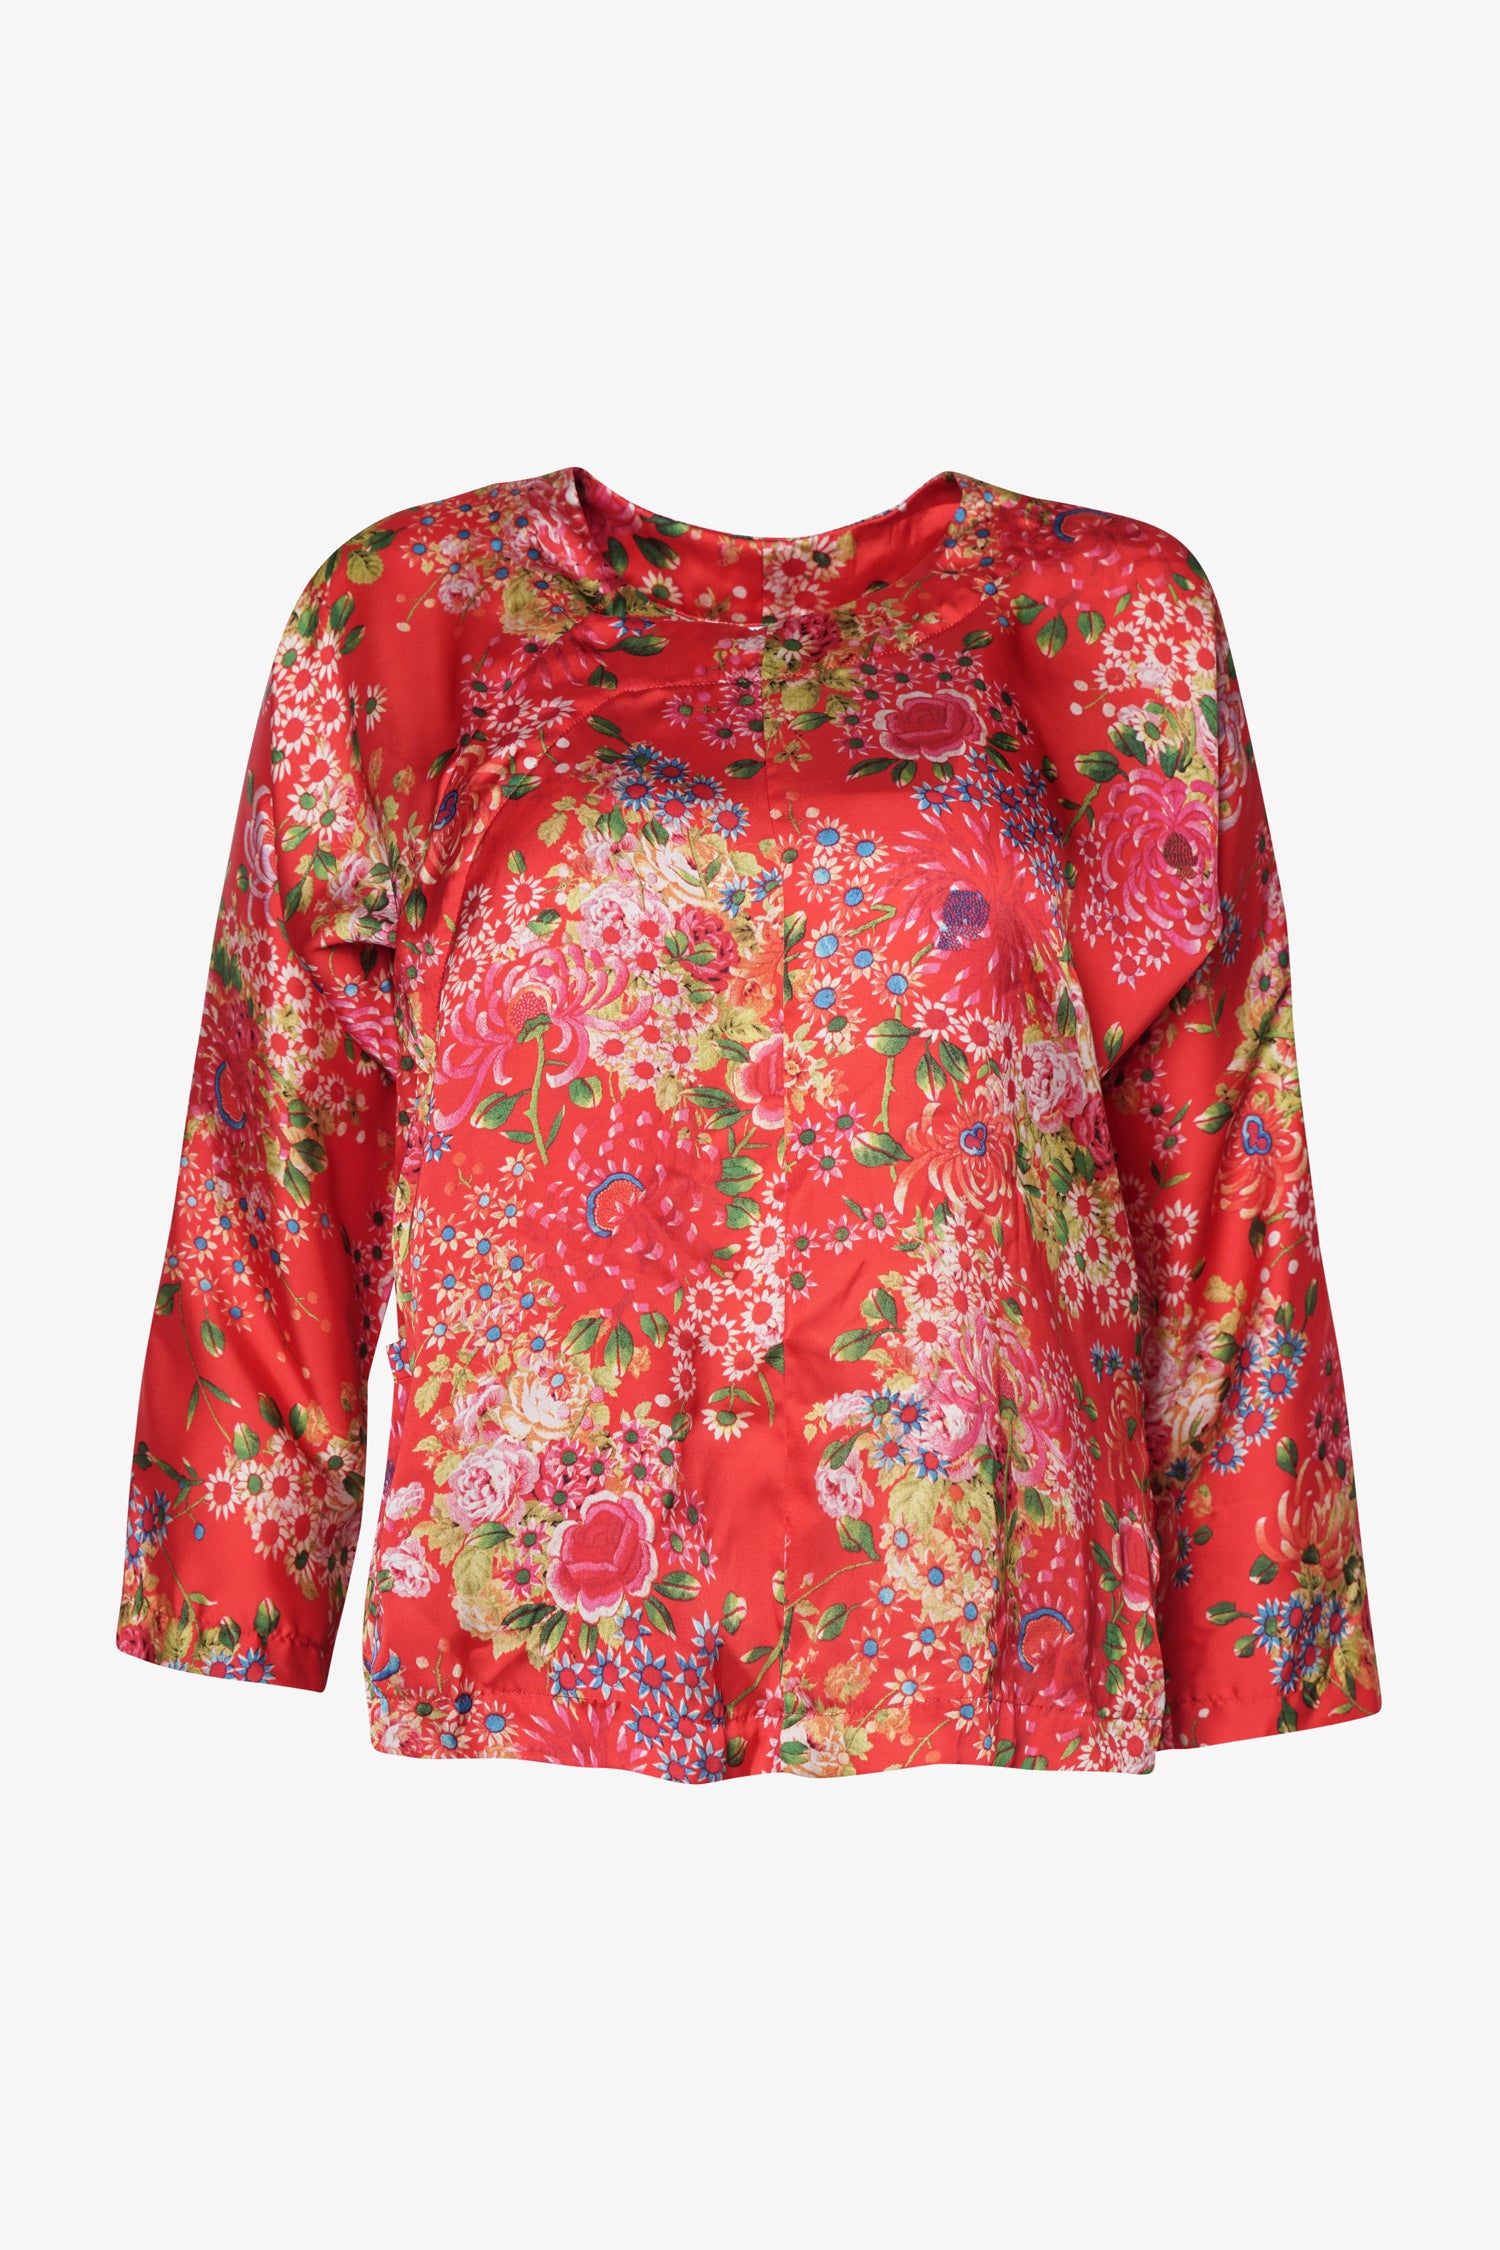 Selectshop FRAME - COMME DES GARCONS COMME DES GARCONS Floral-Print Blouse Shirts Dubai